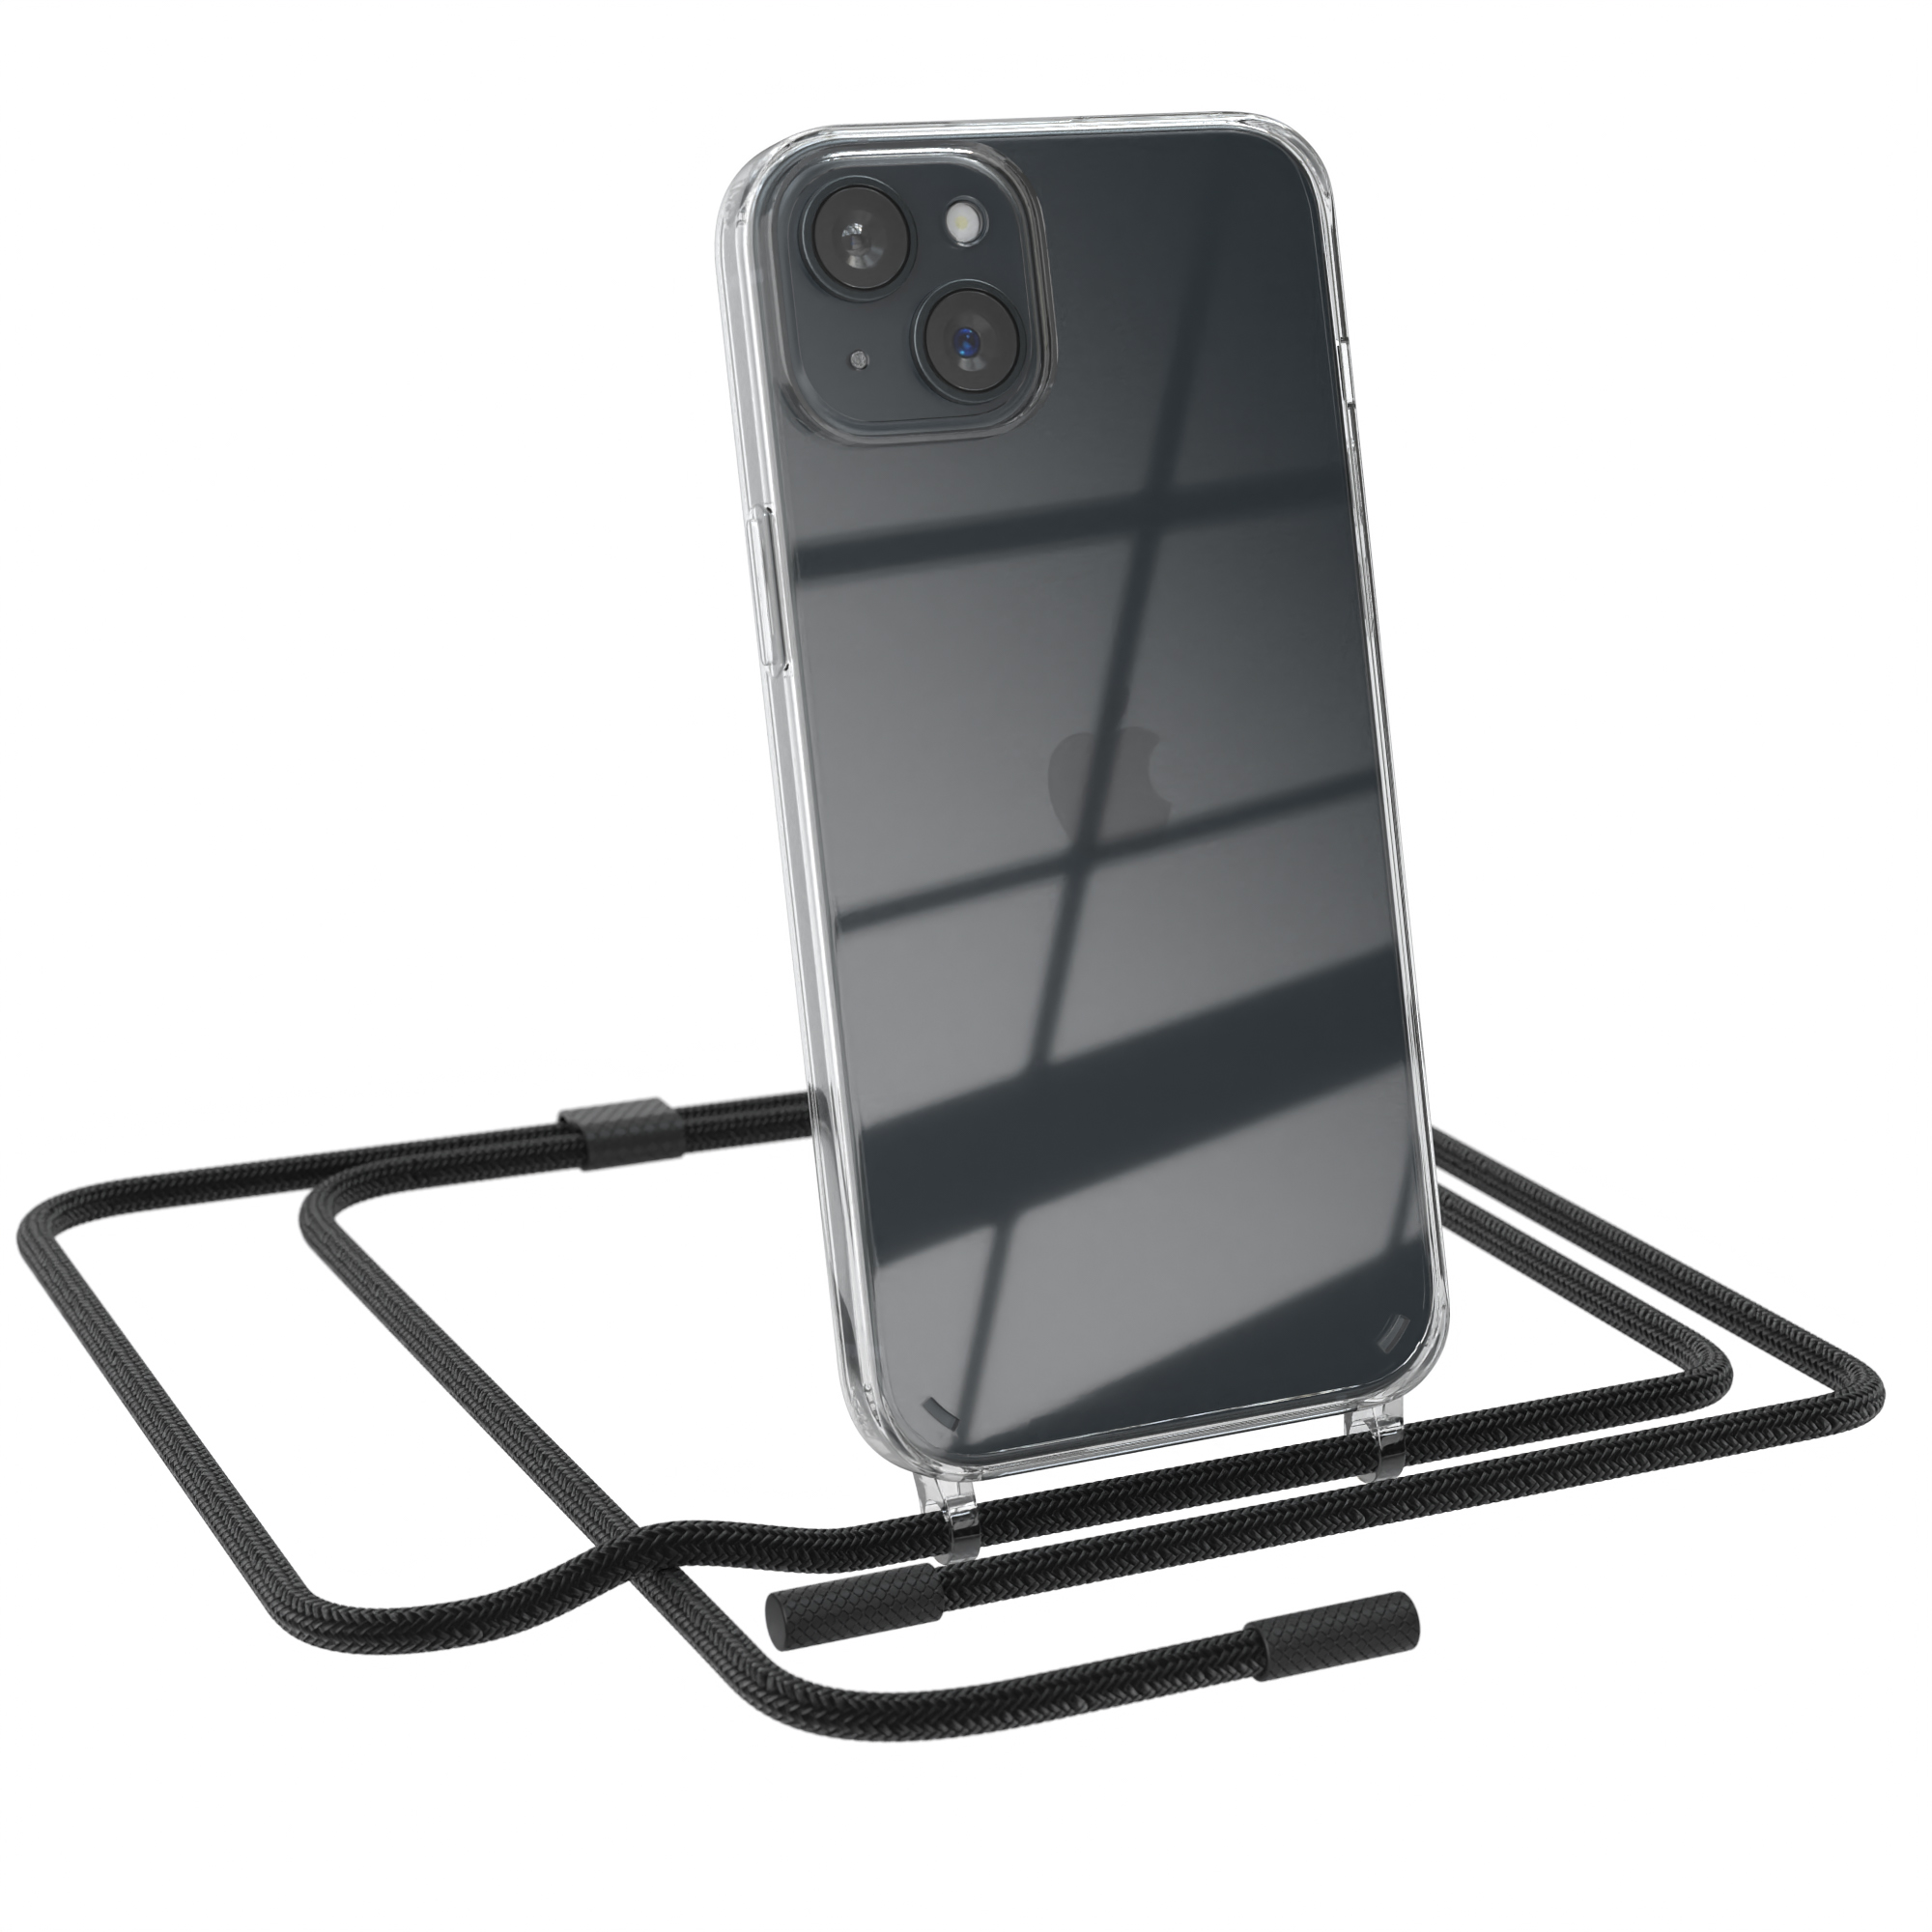 EAZY CASE Transparente iPhone Handyhülle Umhängetasche, mit unifarbend, Schwarz Apple, 15 runder Plus, Kette